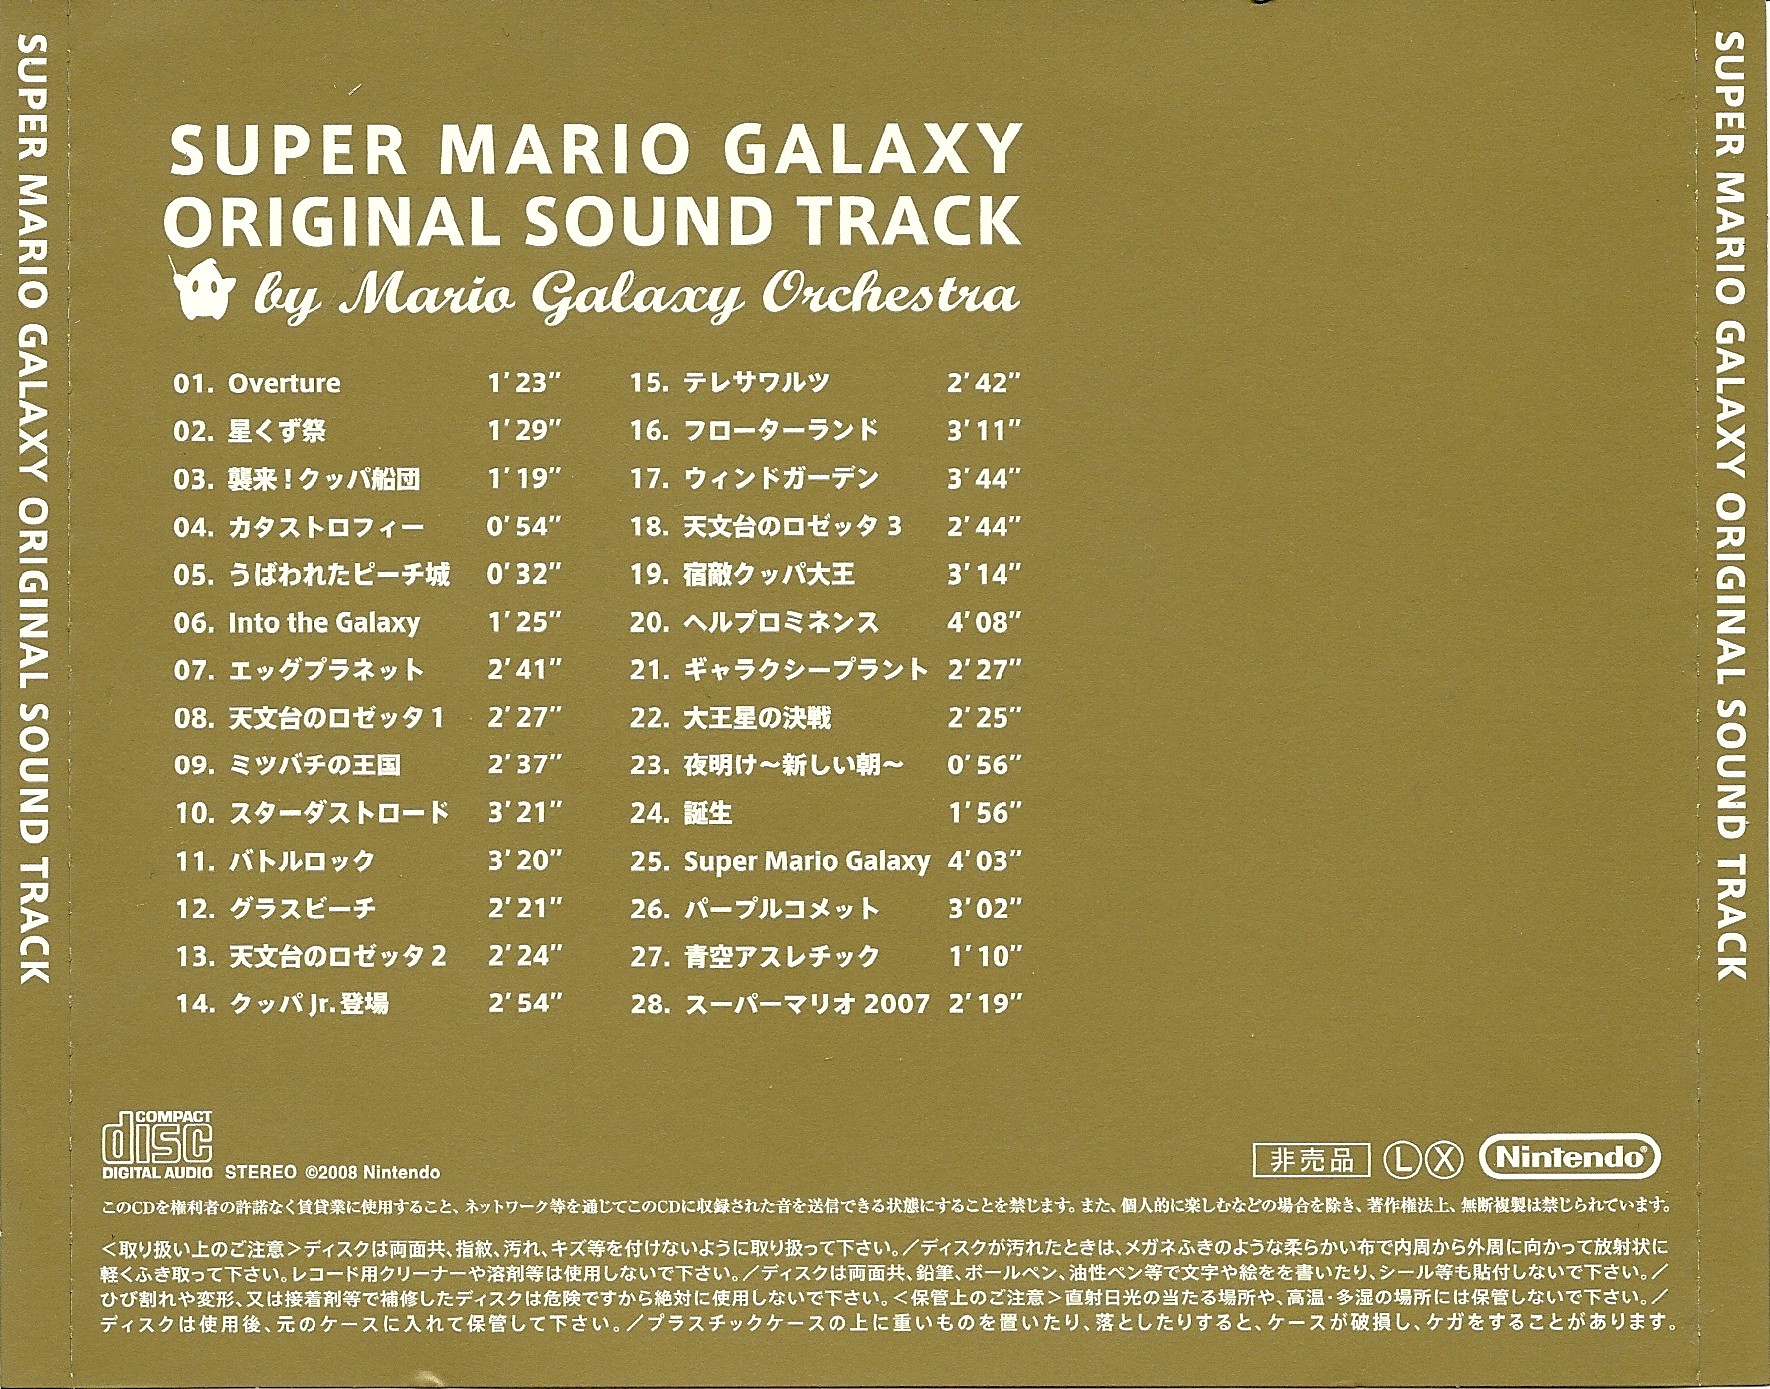 SUPER MARIO GALAXY ORIGINAL SOUND TRACK (2008) MP3 - Download 